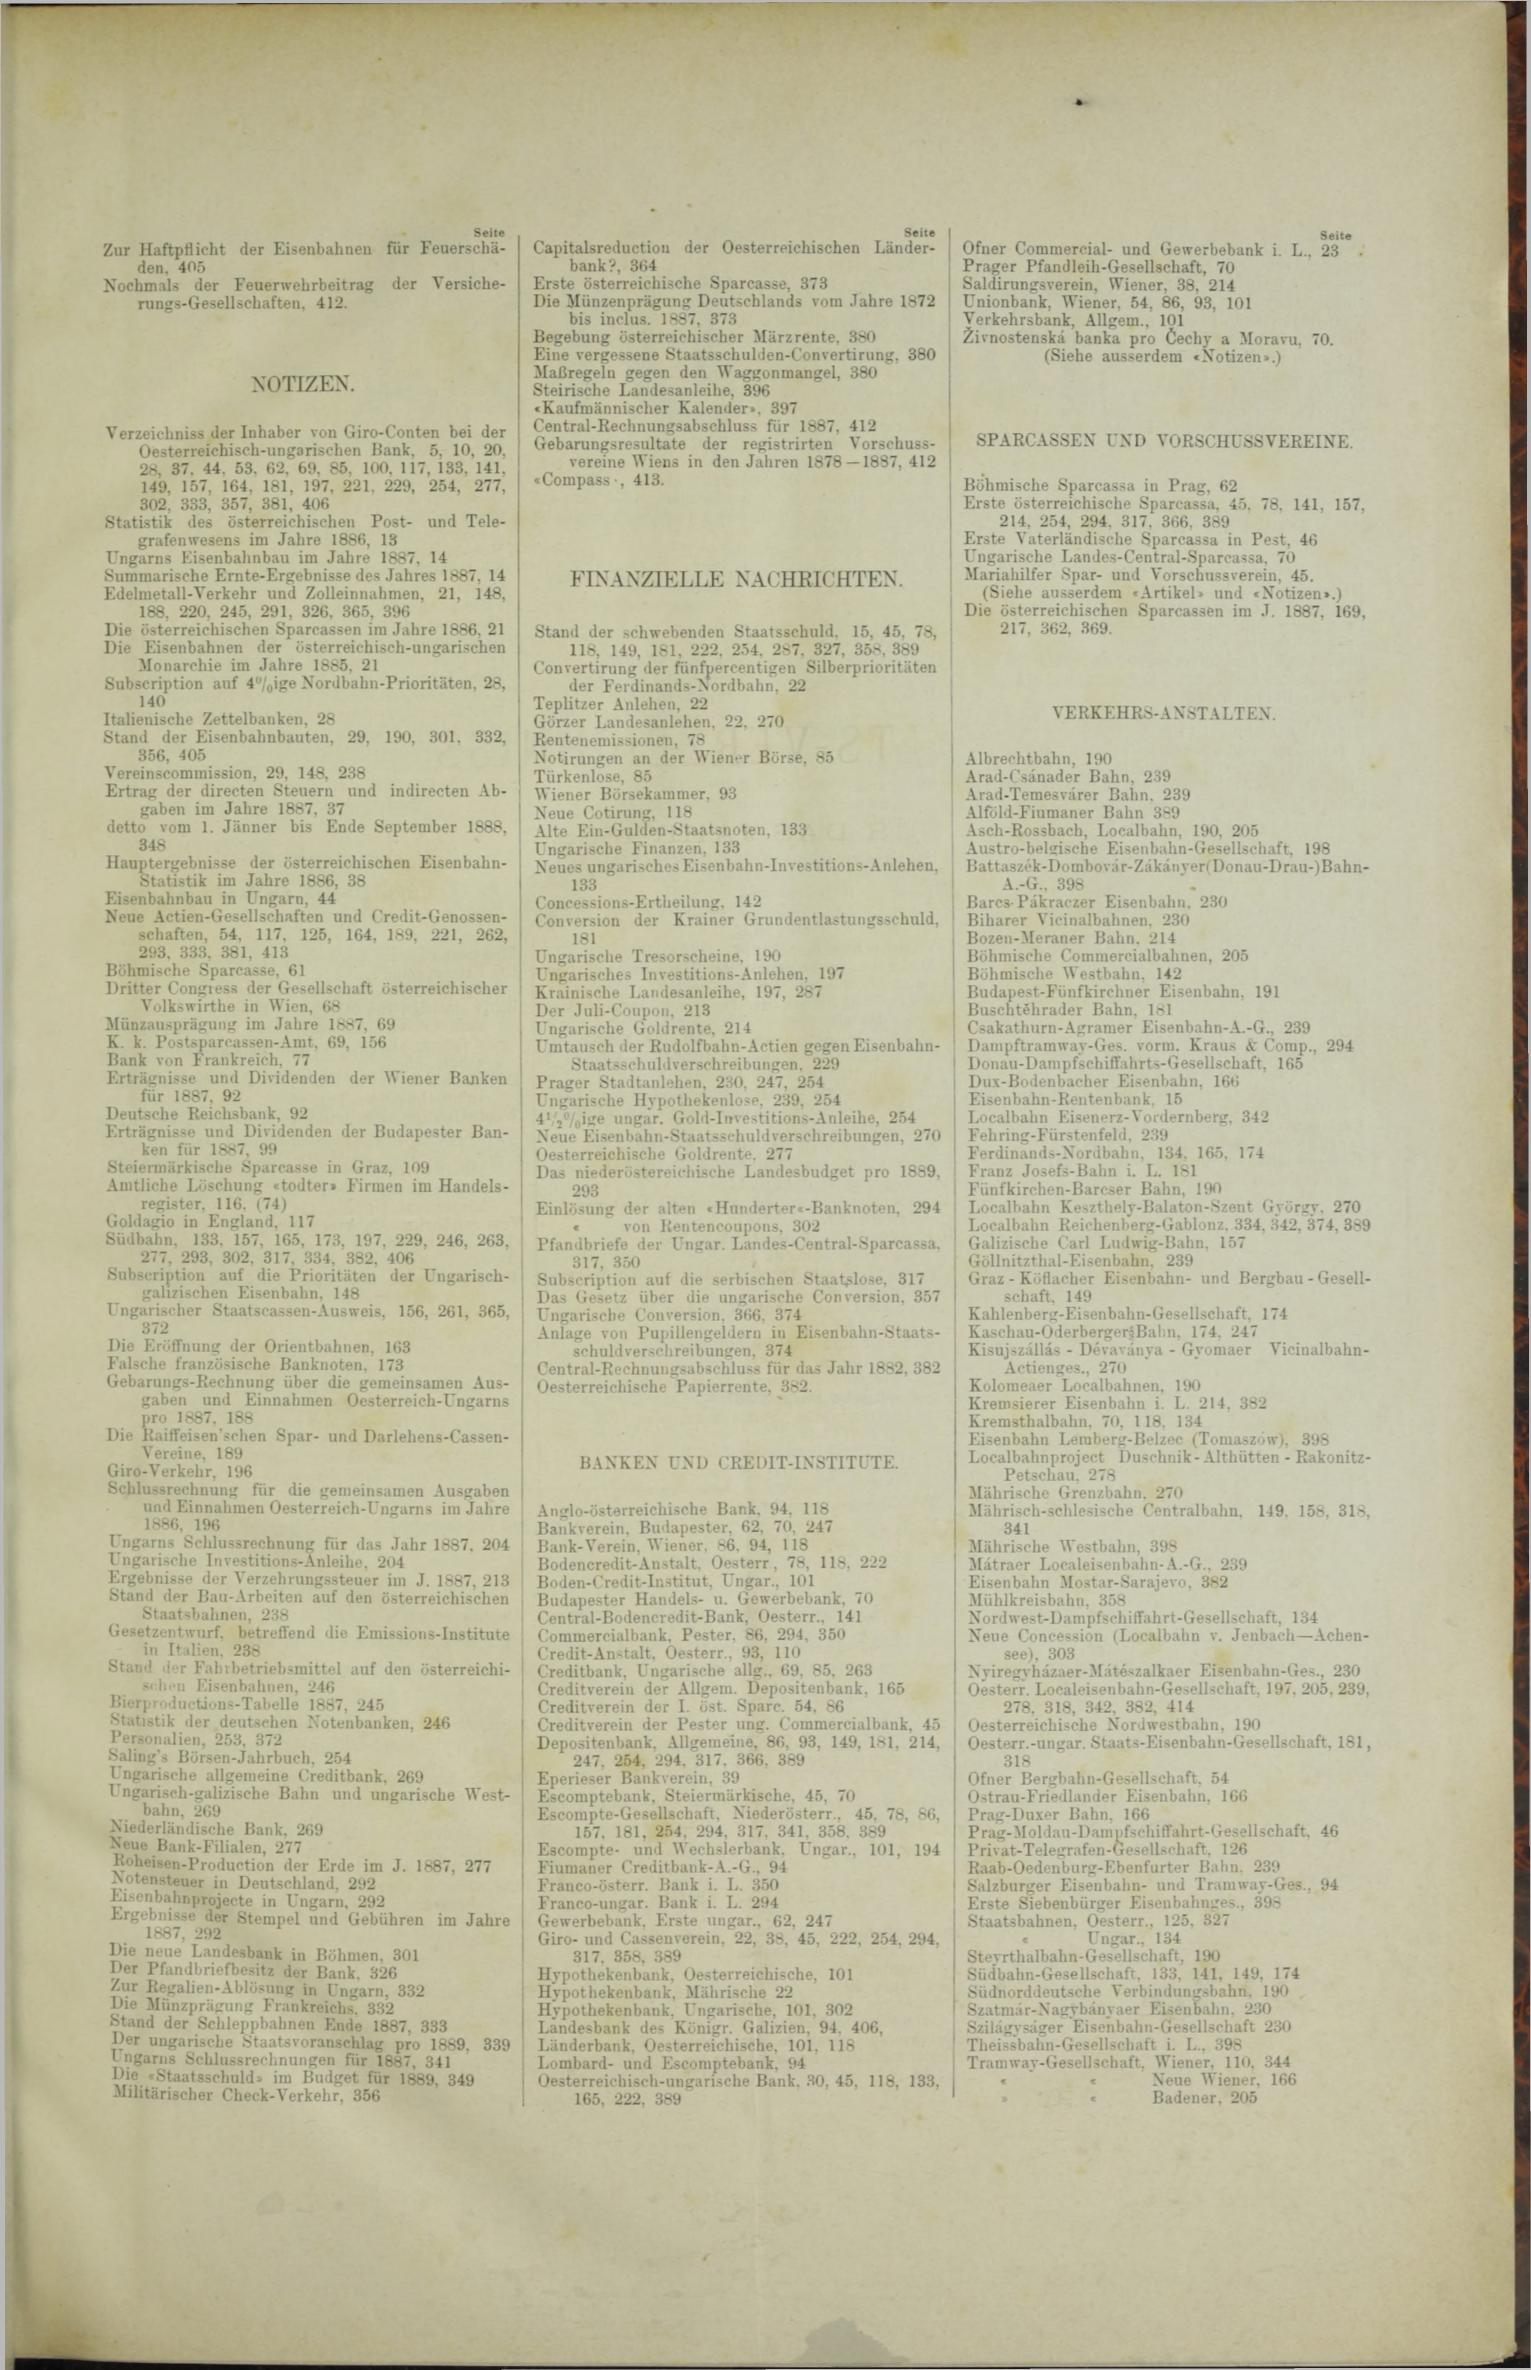 Der Tresor 29.11.1888 - Seite 11